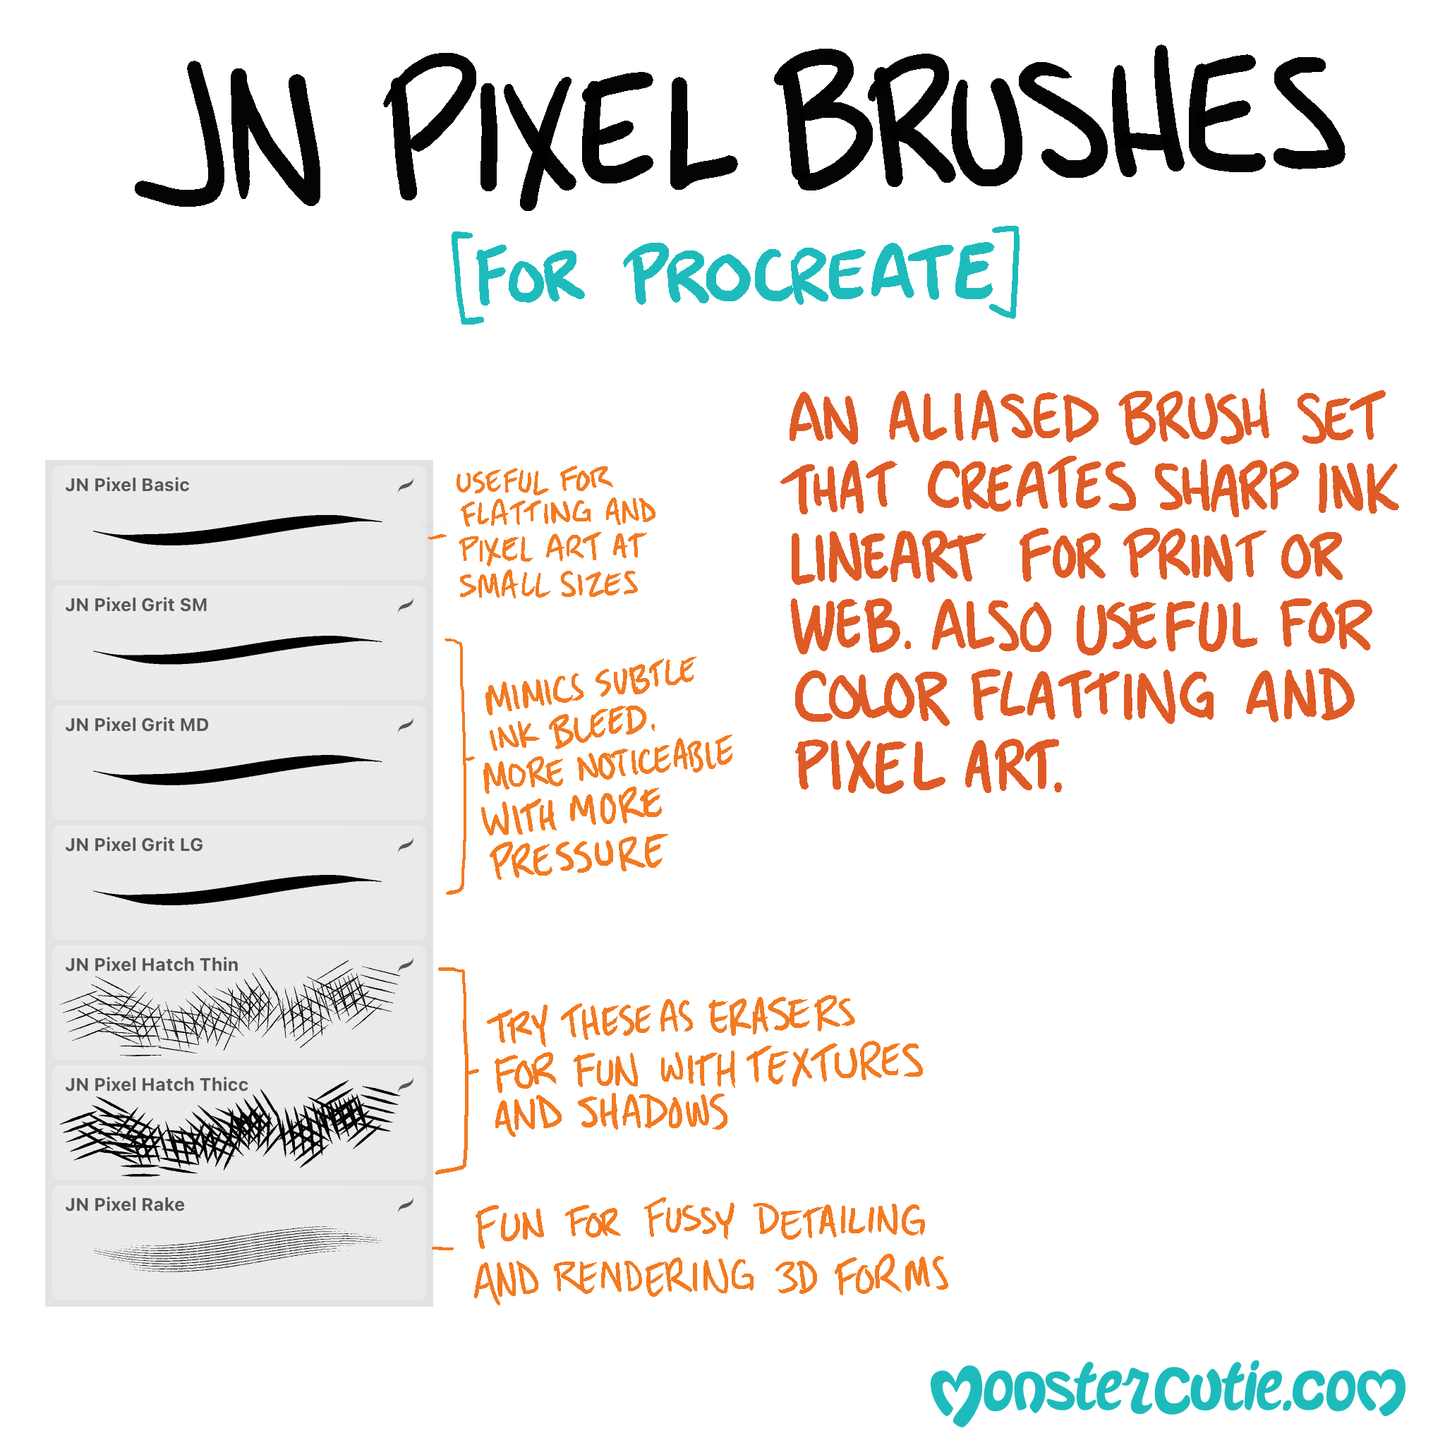 JN Pixel Brushes